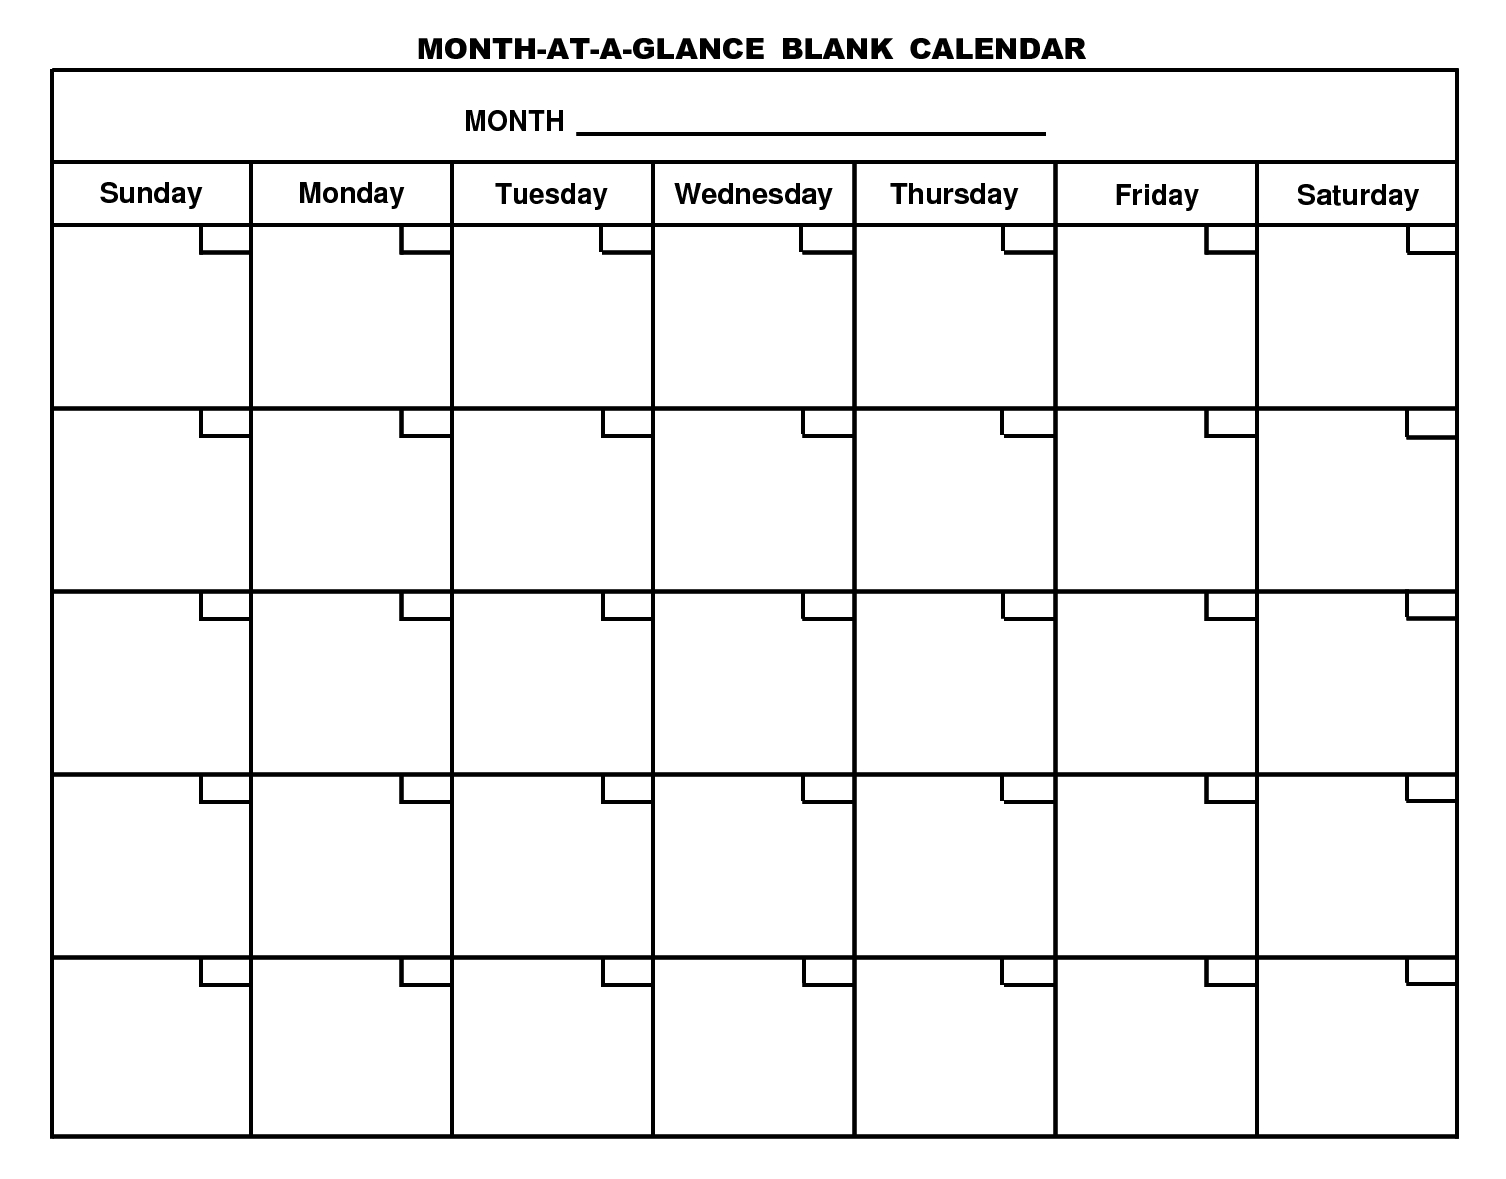 Schedule Blank Template Printable Calendar E2 80 A6 Organizing Pinte Template For A Printable Calendar